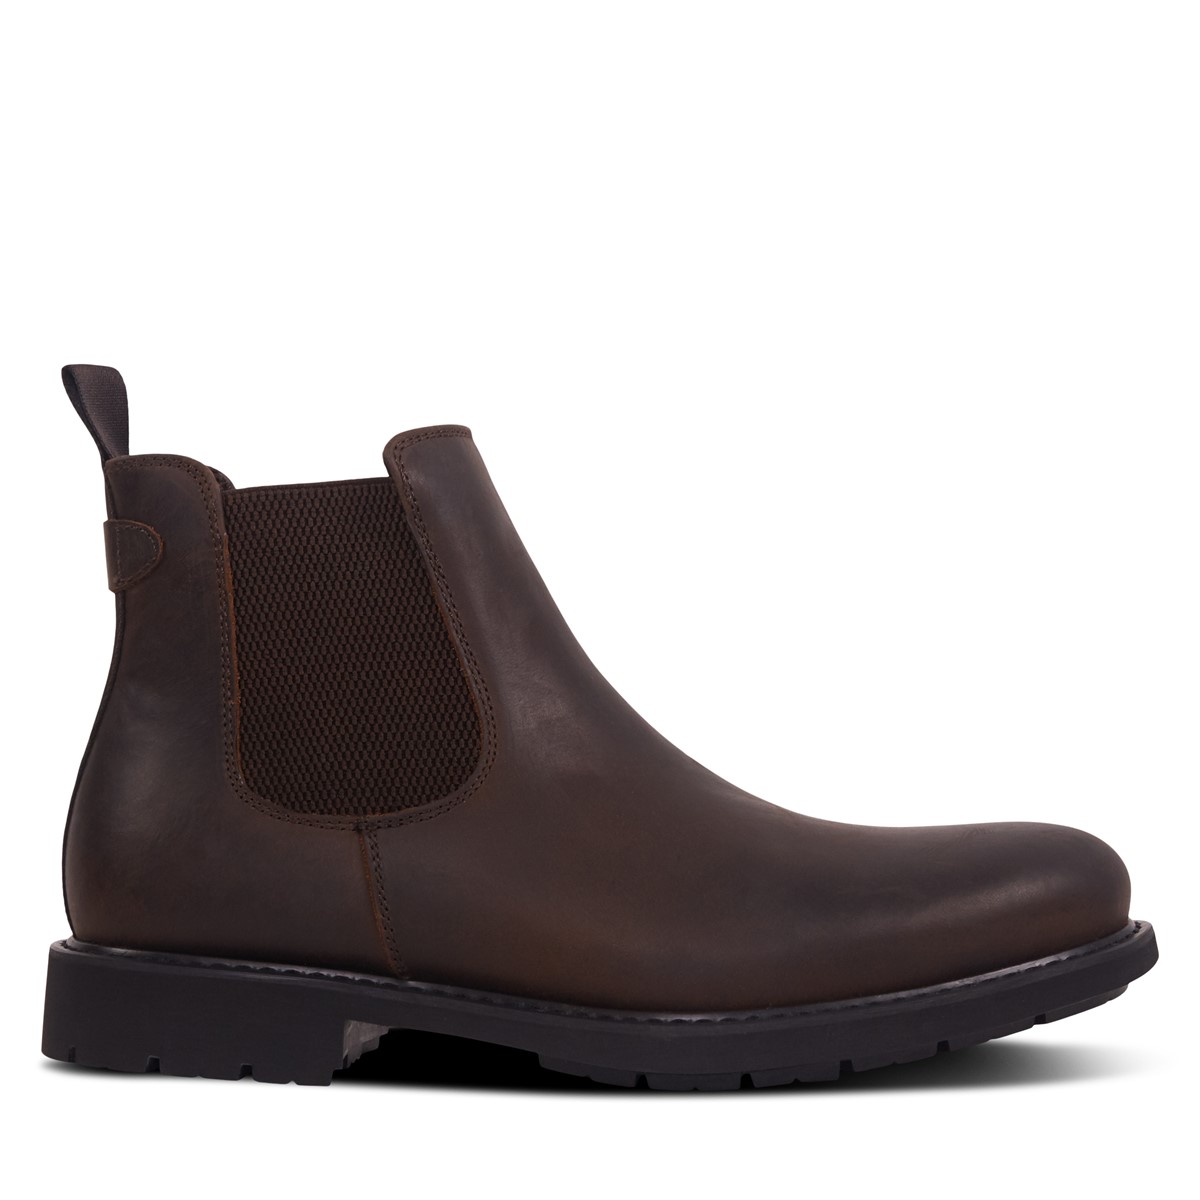 Men's Tanios Chelsea Boots in Dark Brown